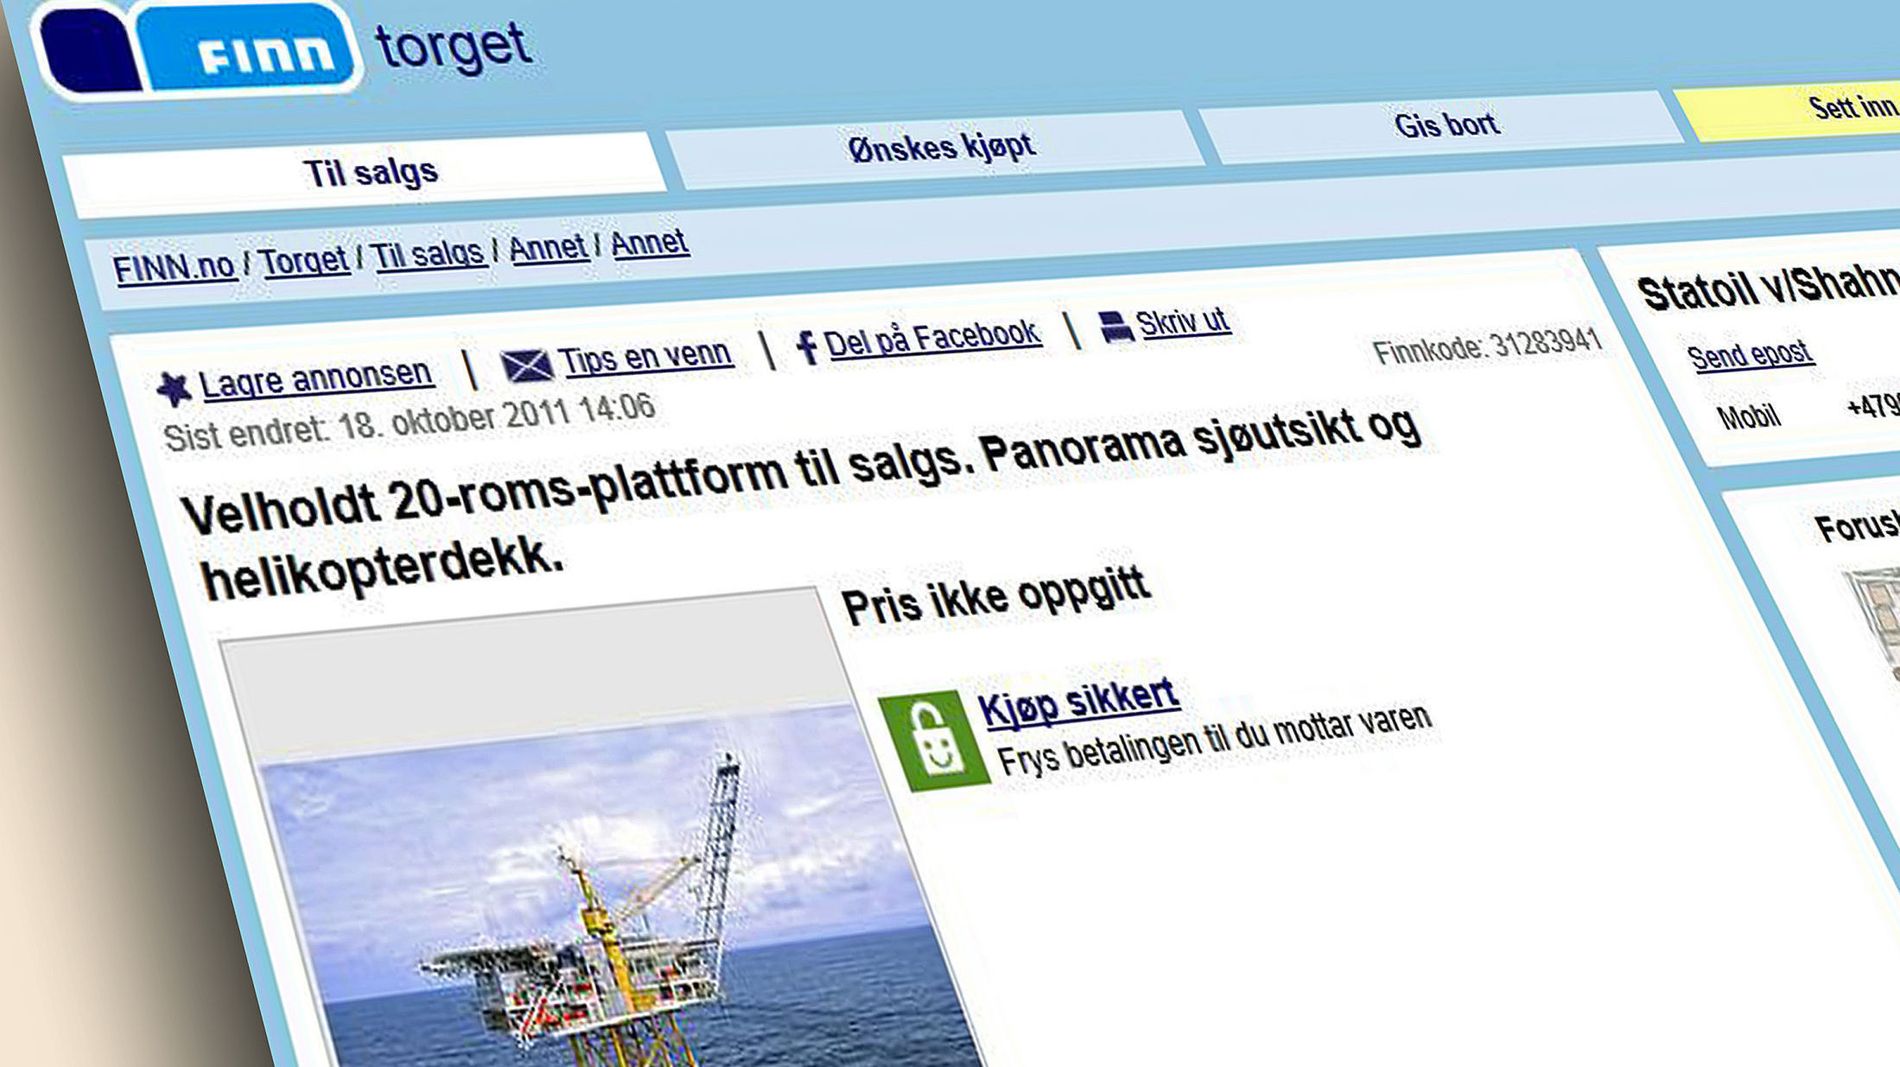 www.finn.no torget